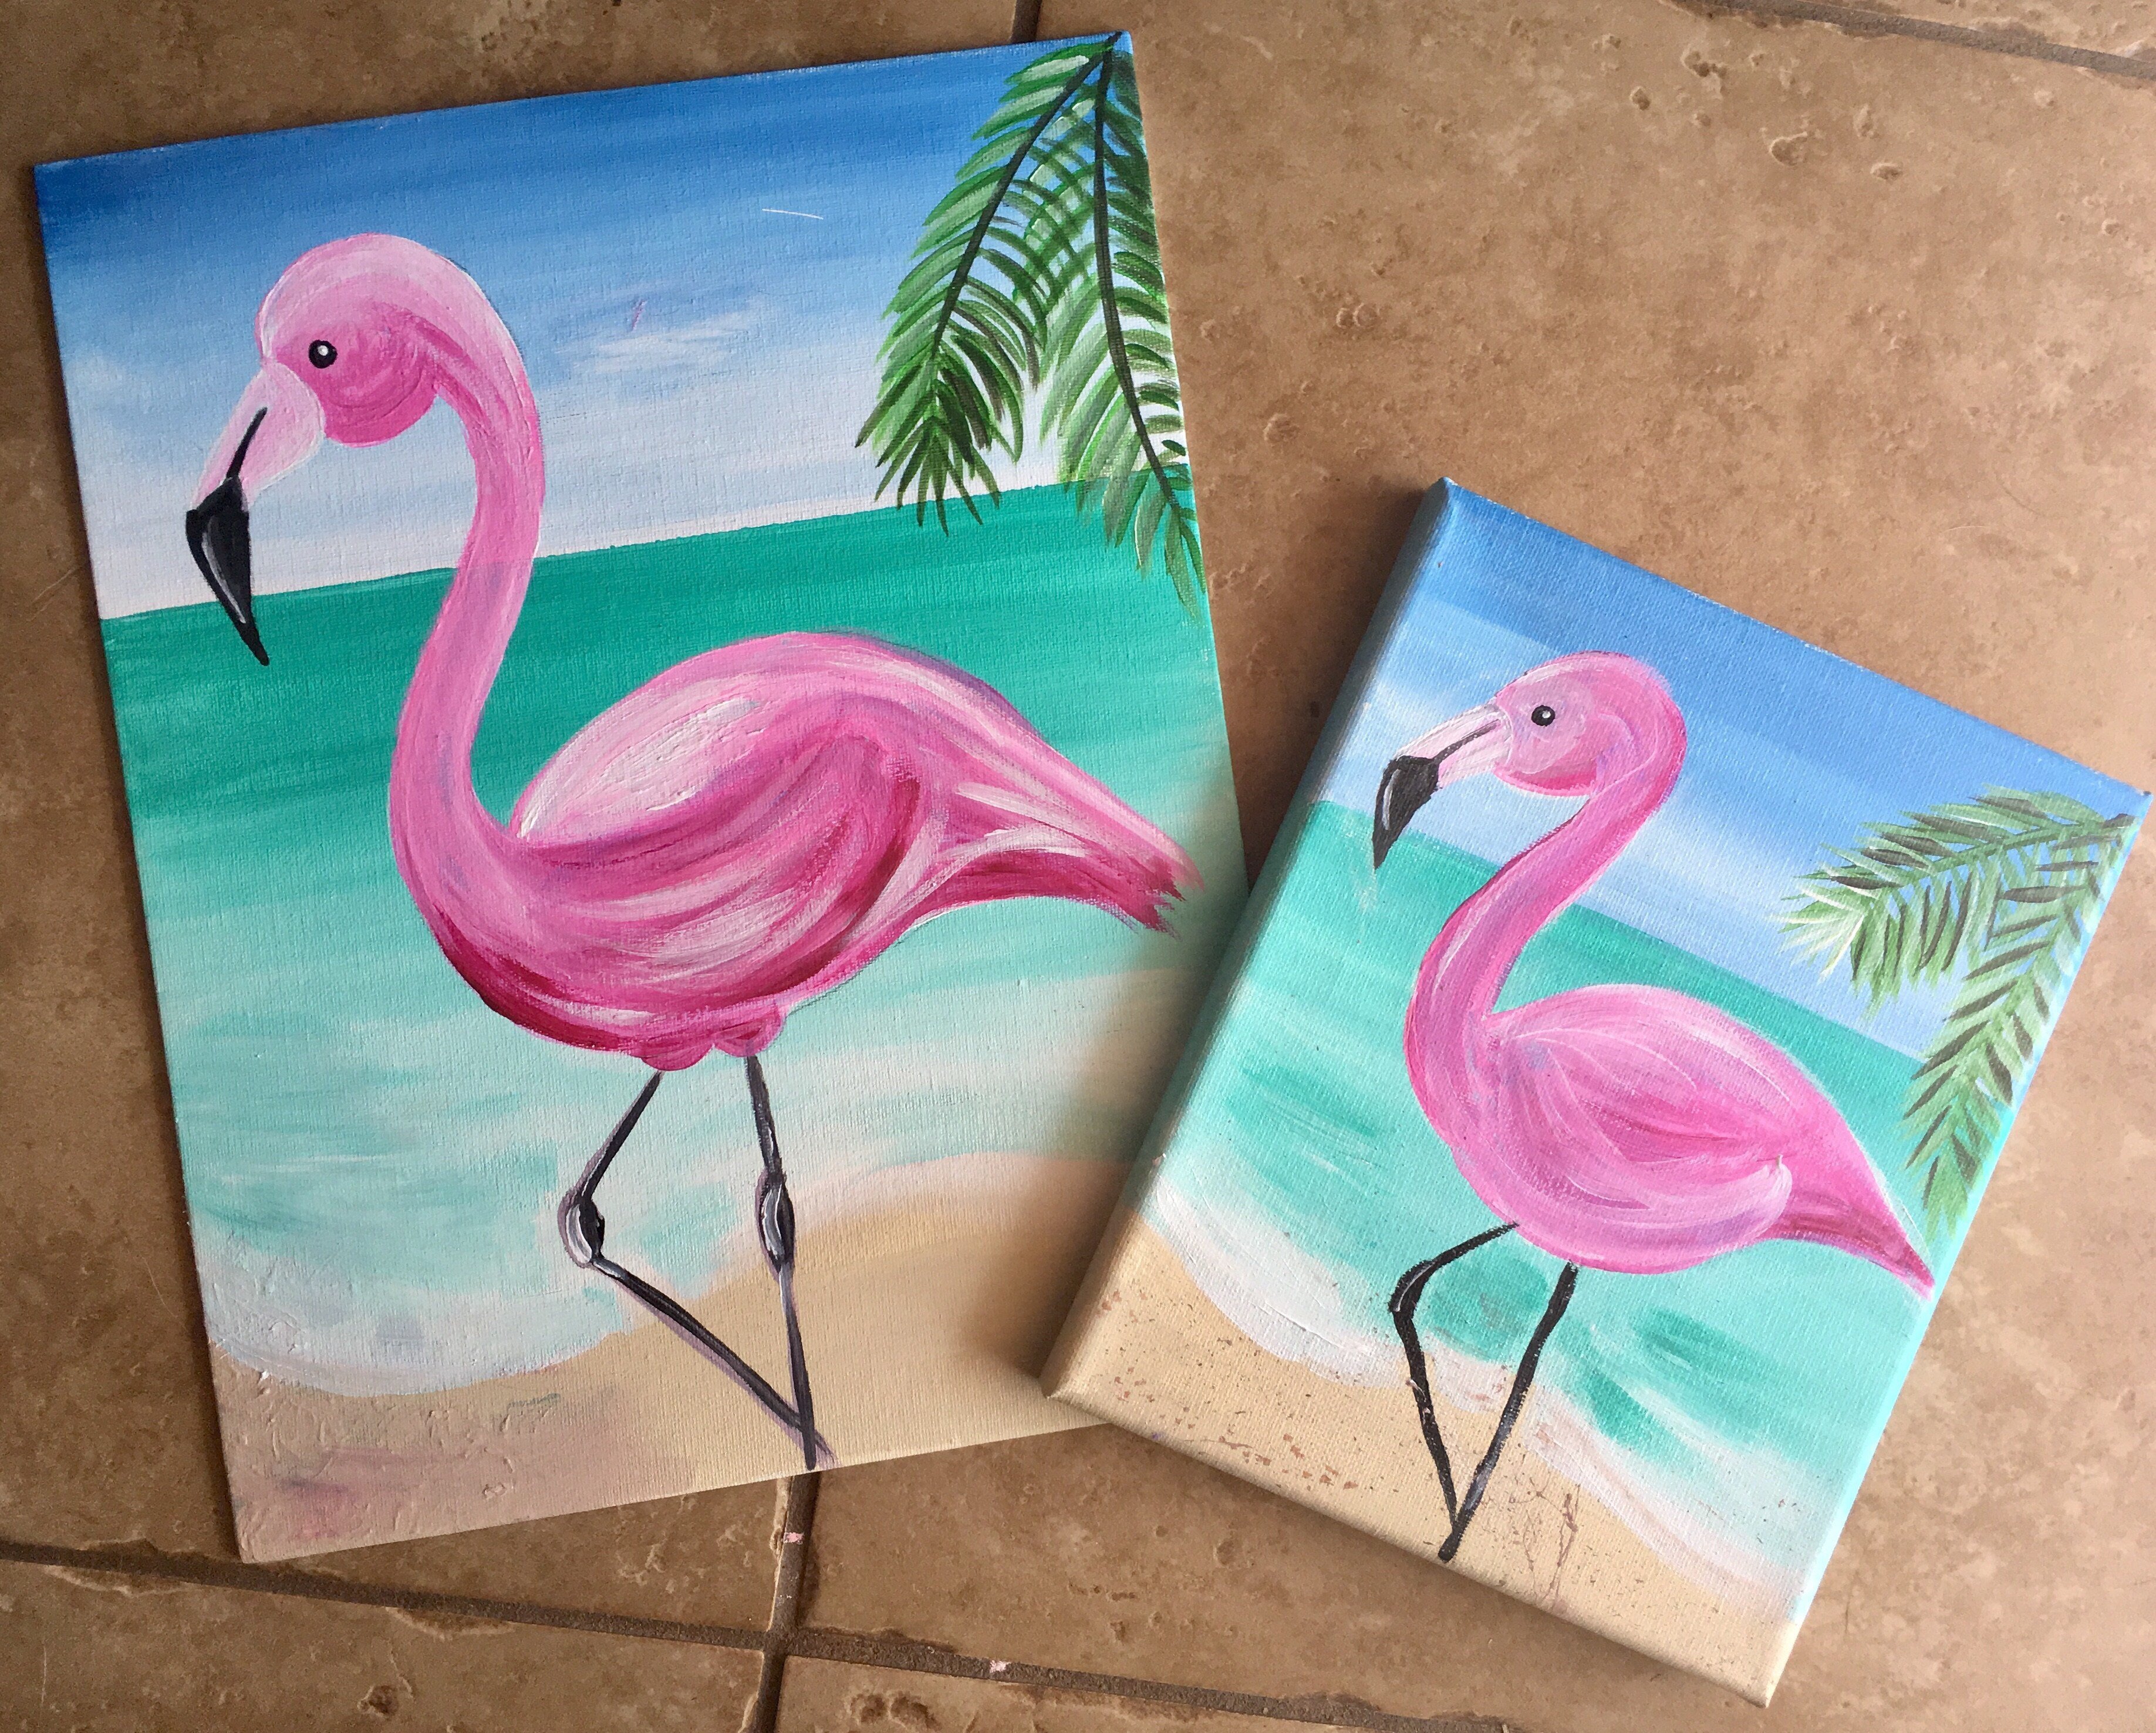 Фламинго рисунок для срисовки